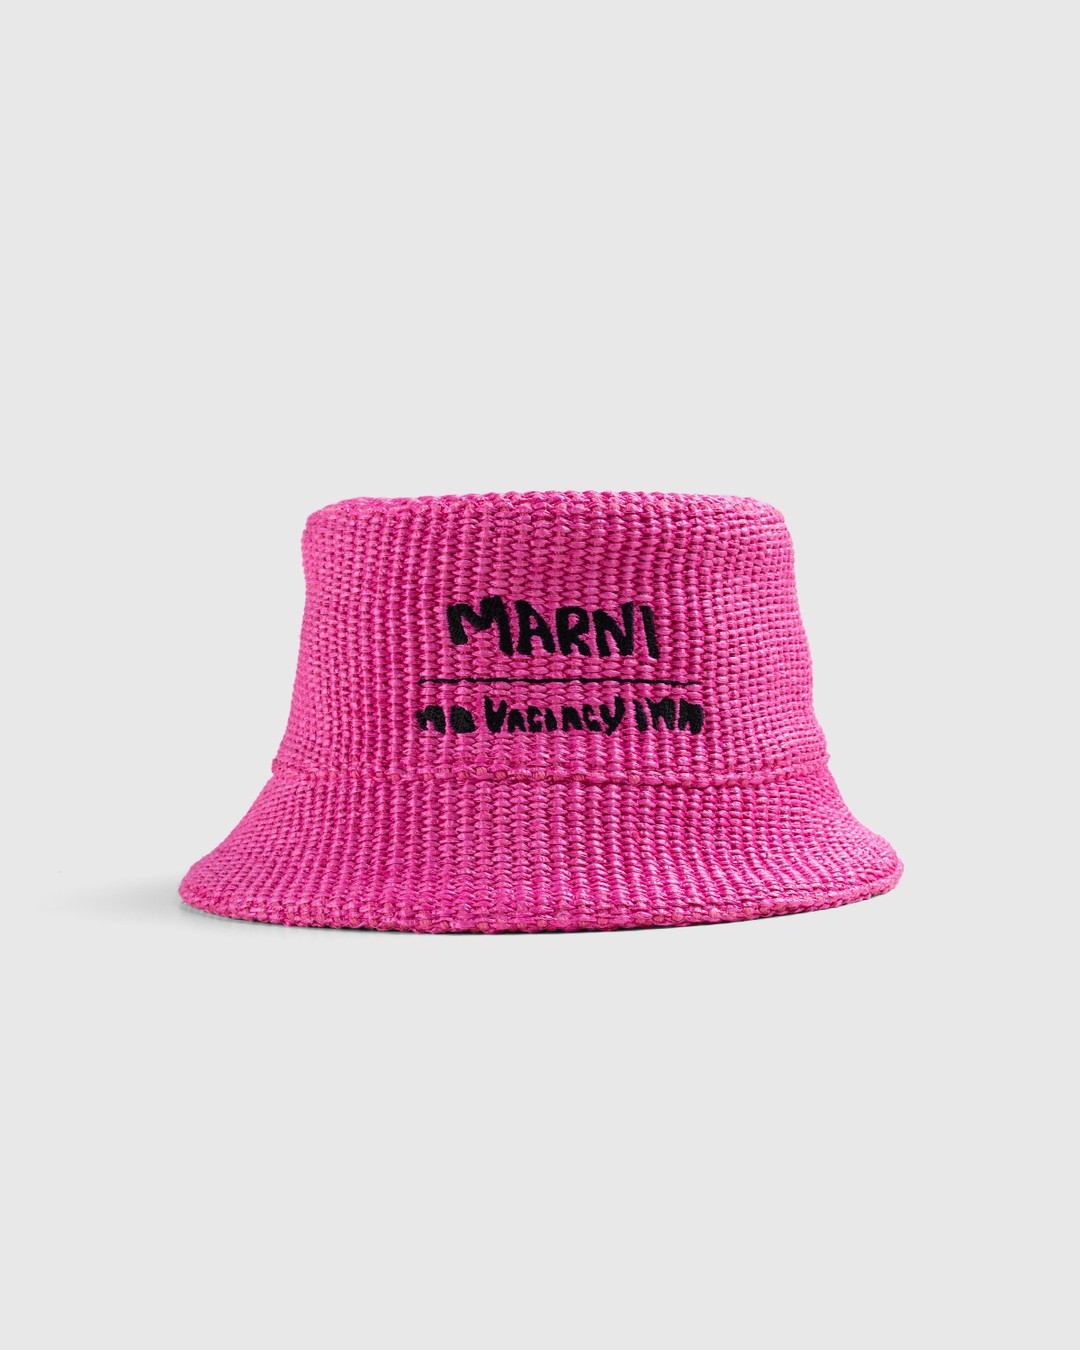 Marni x No Vacancy Inn – Raffia Bucket Hat Fuschia - Bucket Hats - Pink - Image 1